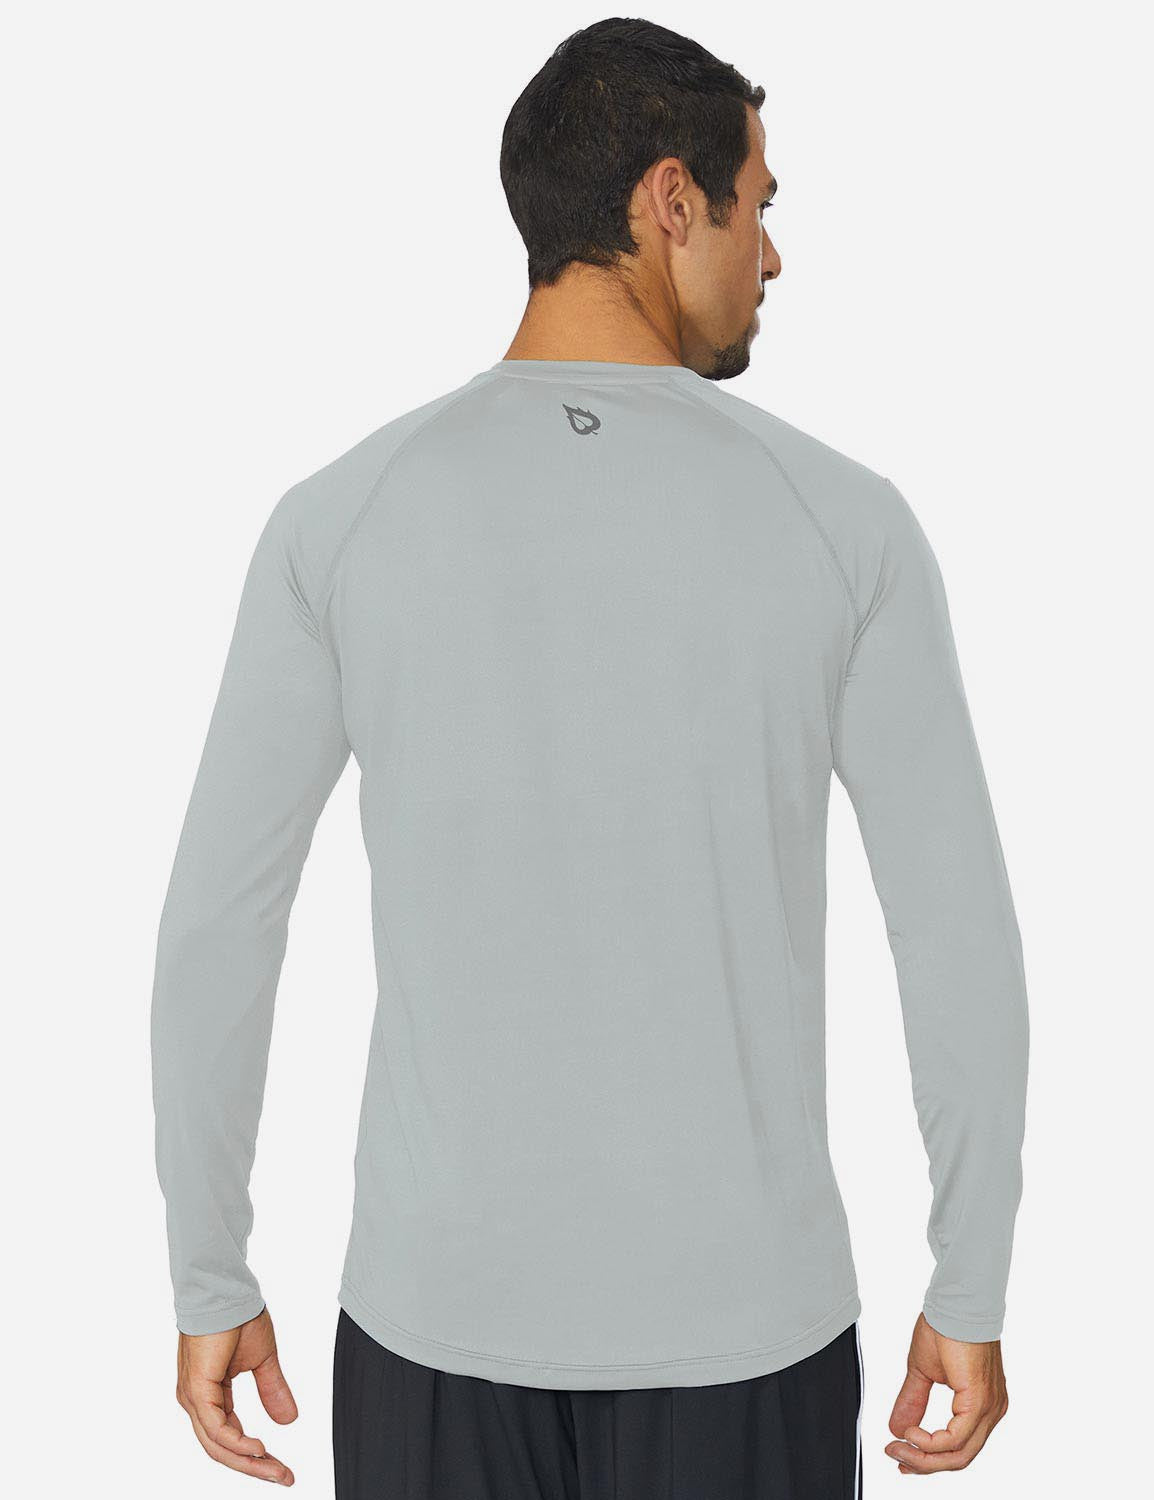 Baleaf Men's Workout Crew-Neck Slim-Cut Long Sleeved Shirt abd195 Silver Back